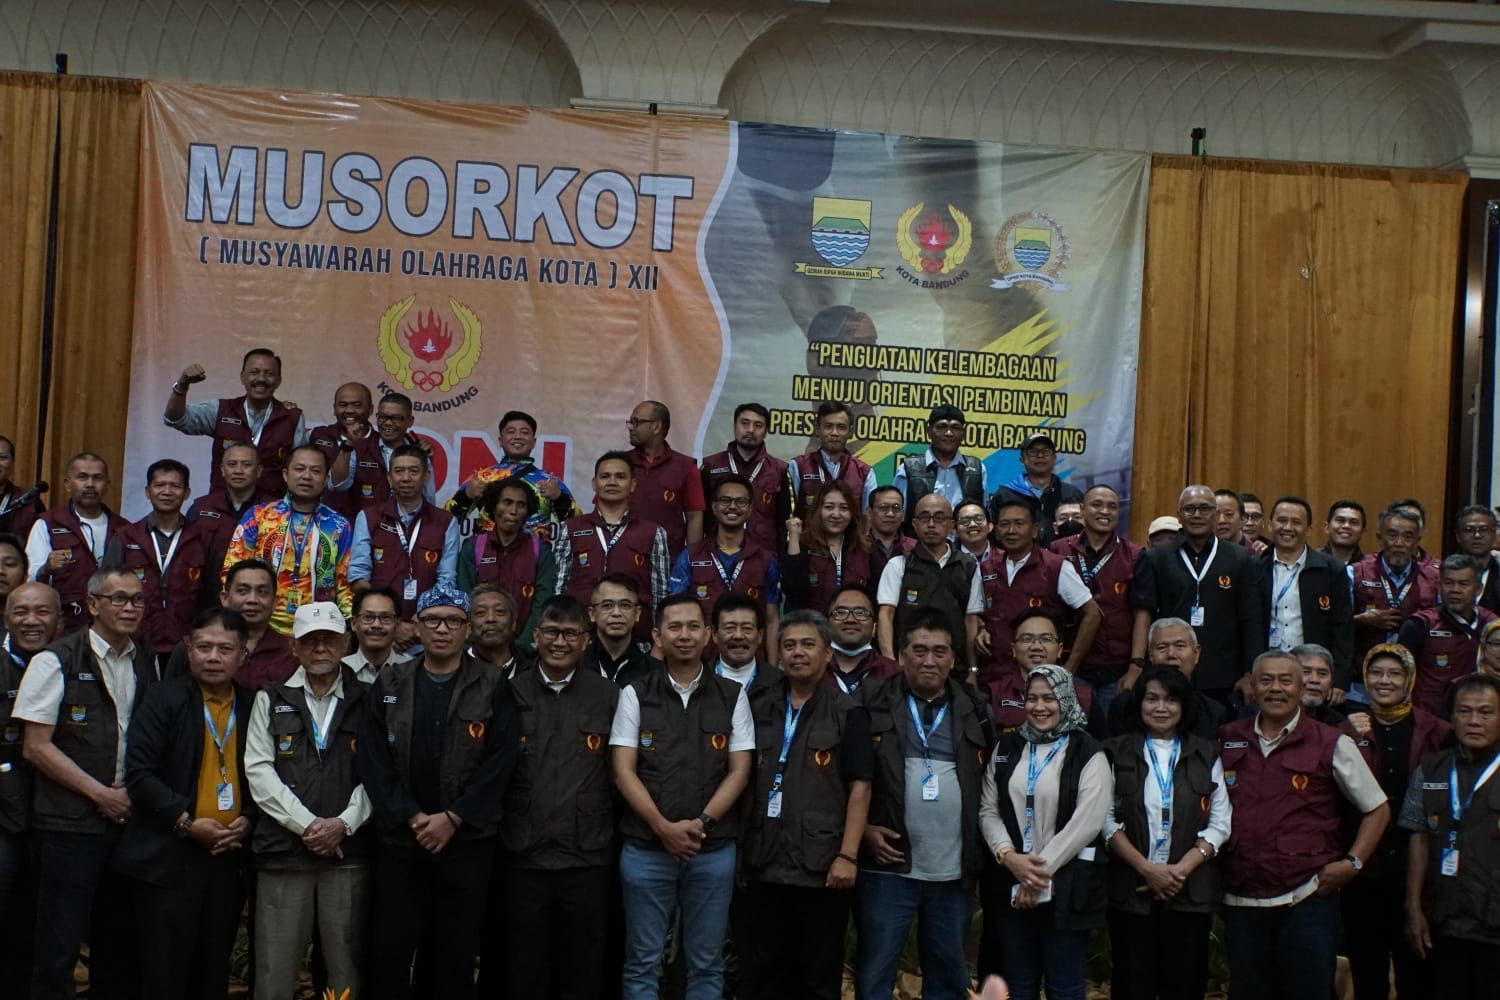 Nuryadi secara aklamasi terpilih menjadi Ketua Umum KONI Kota Bandung periode 2023-2027 bersama para peserta Musorkot Kamis 23 Februari 2023.